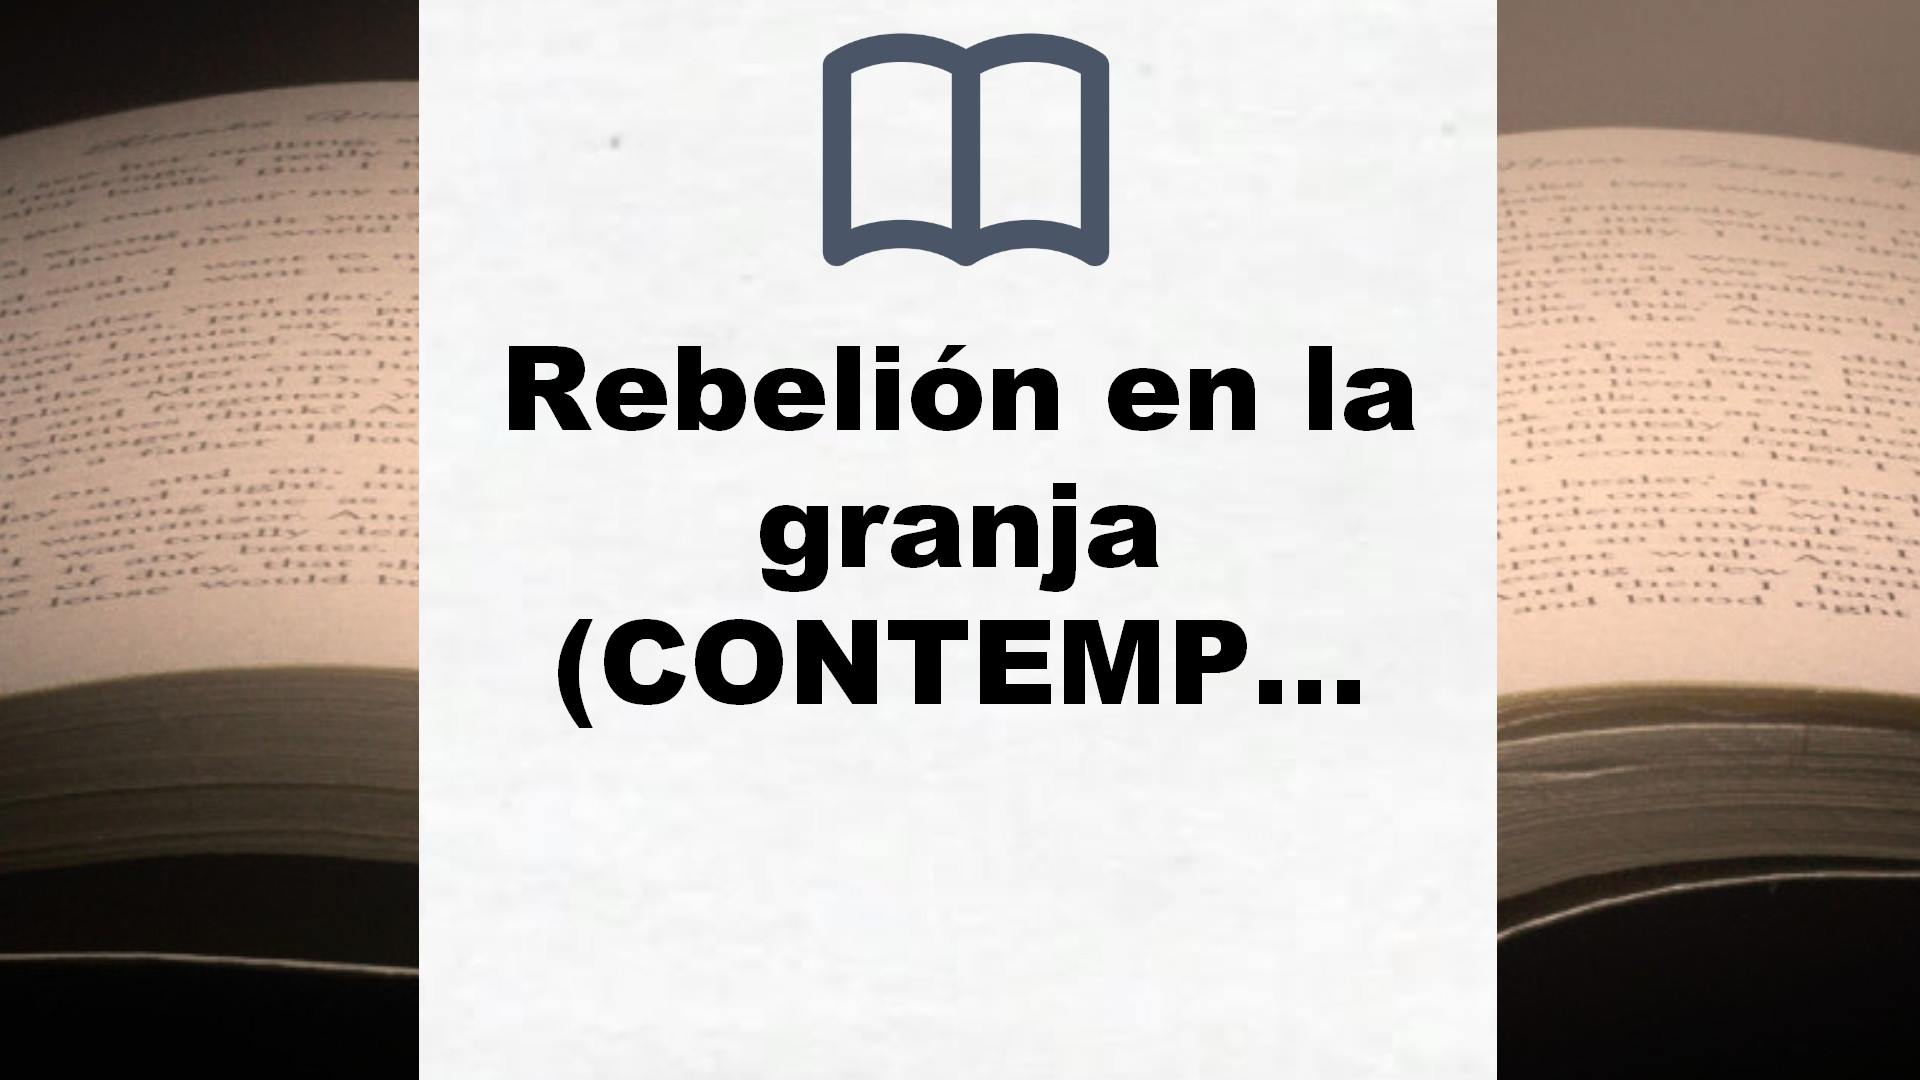 Rebelión en la granja (CONTEMPORANEA) Idioma: Español (Contemporánea) – Reseña del libro